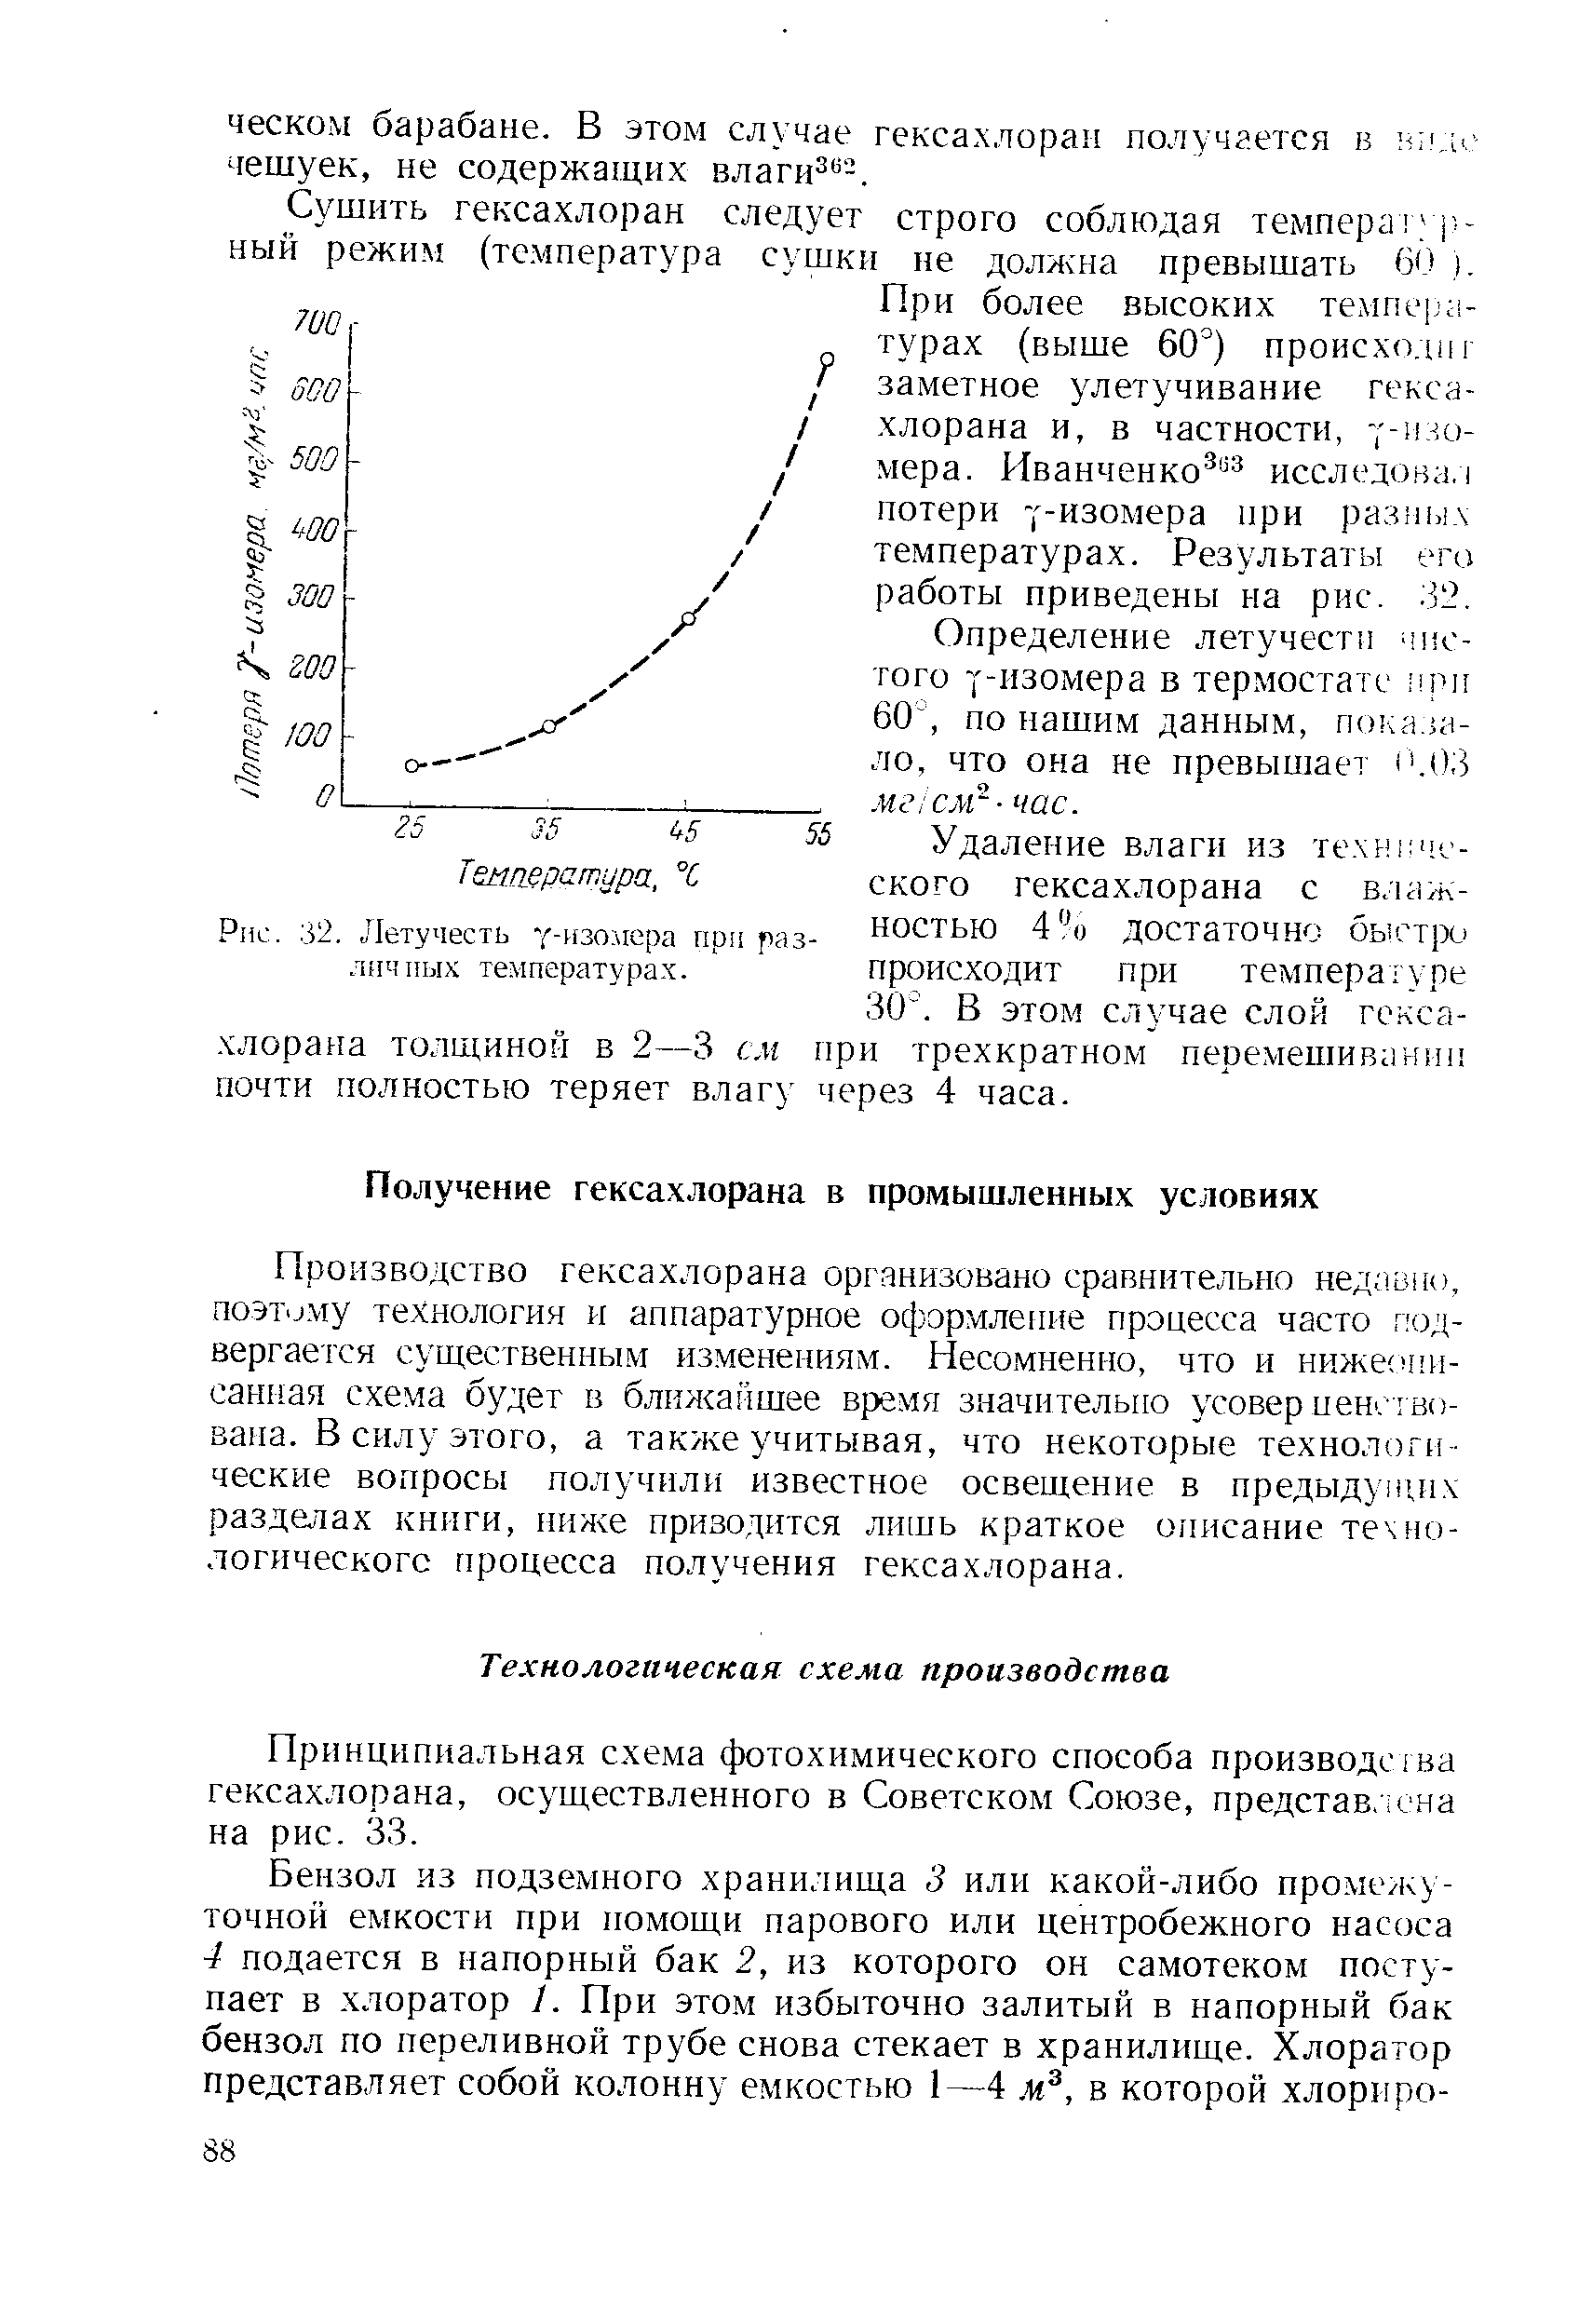 Принципиальная схема фотохимического способа производства гексахлорана, осуществленного в Советском Союзе, представ, сна на рис. 33.